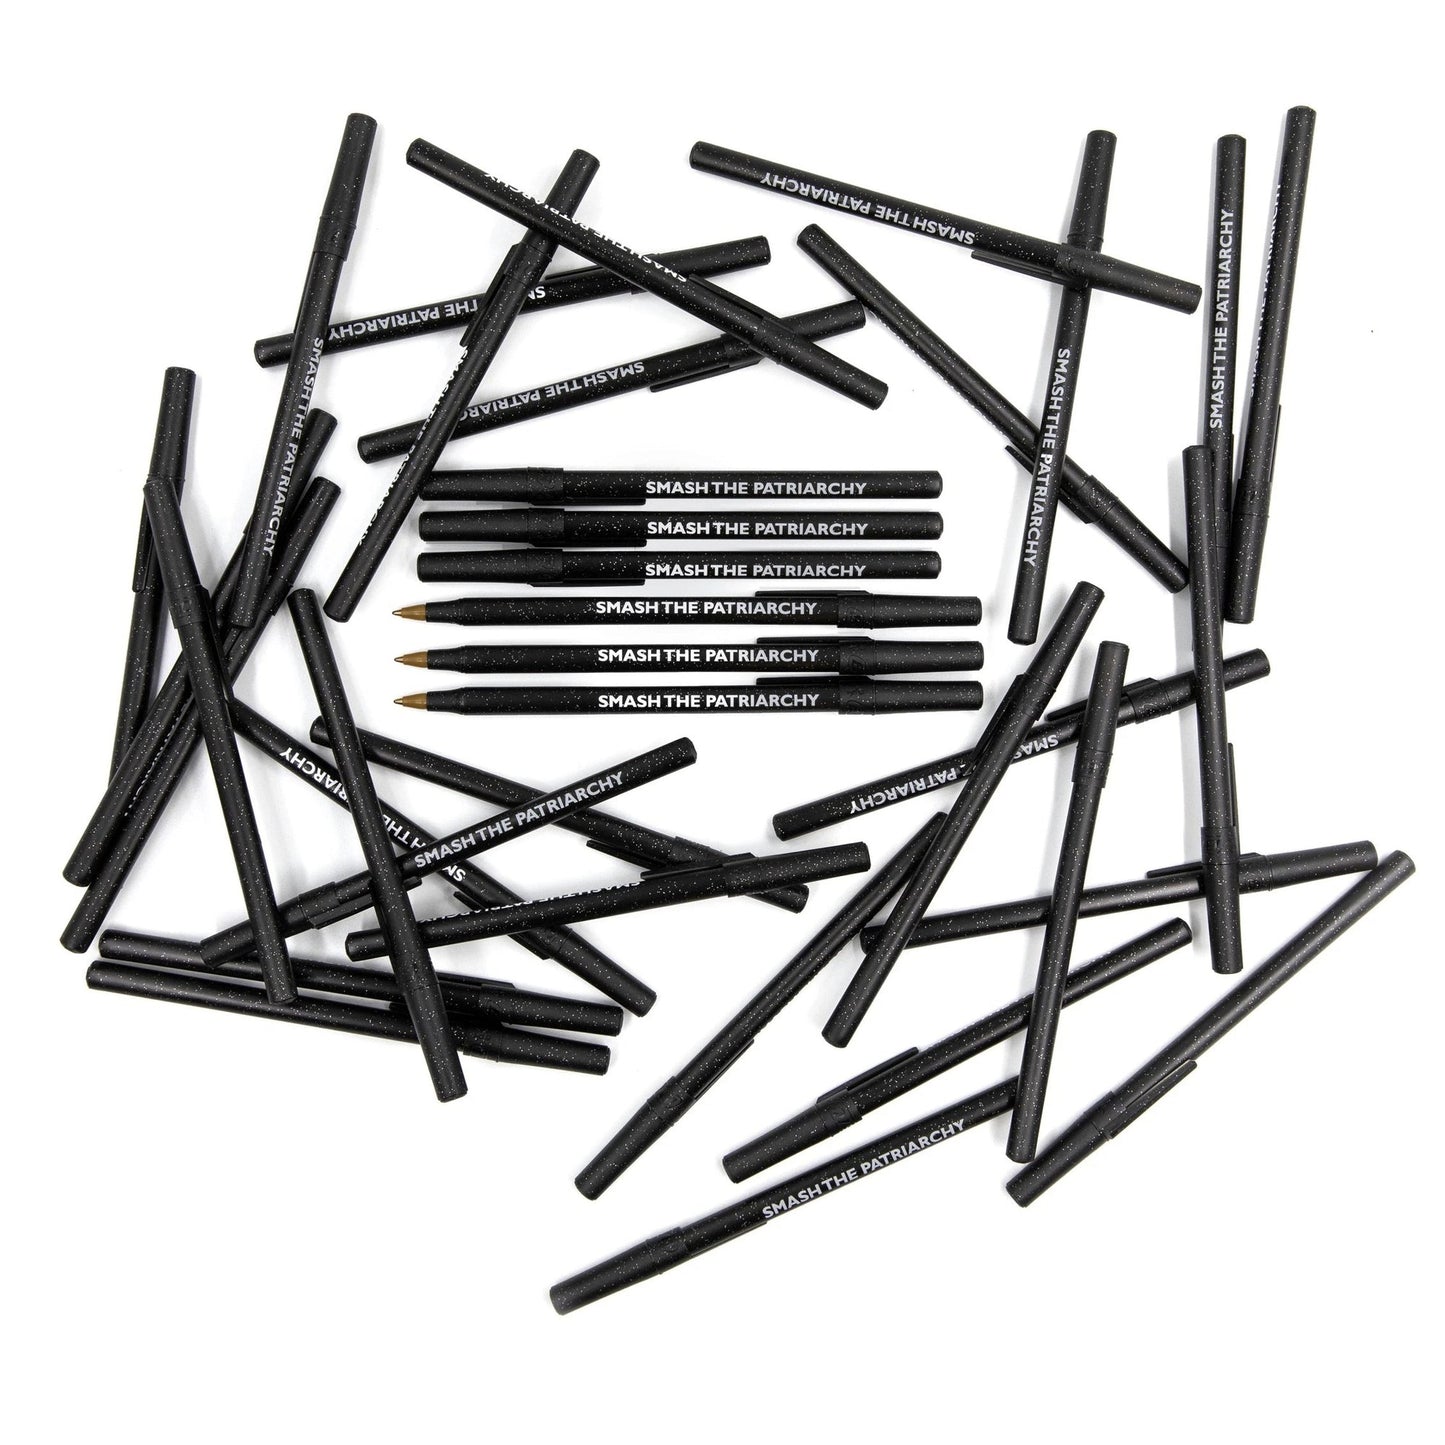 Smash the Patriarchy Black Sparkle Pen Pack - 36 Pens